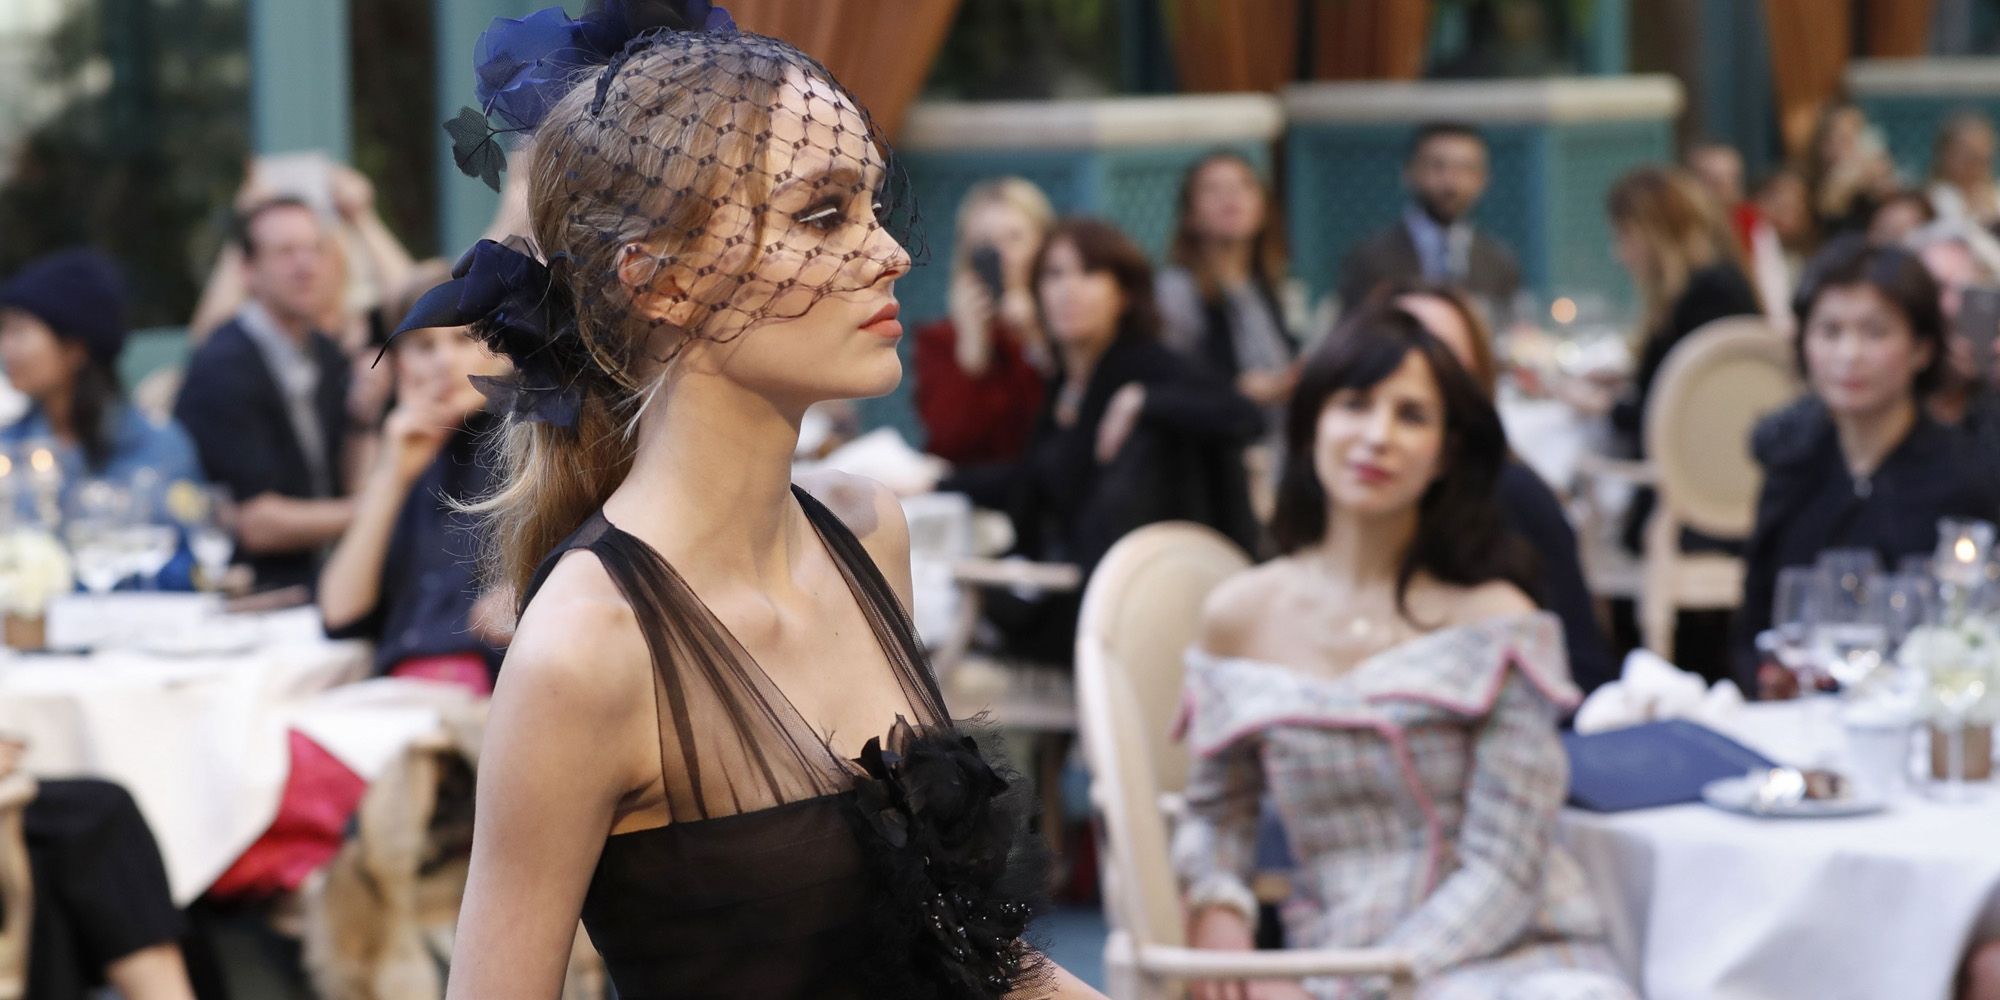 LilyRose Depp Makes Runway Modeling Debut at Chanel